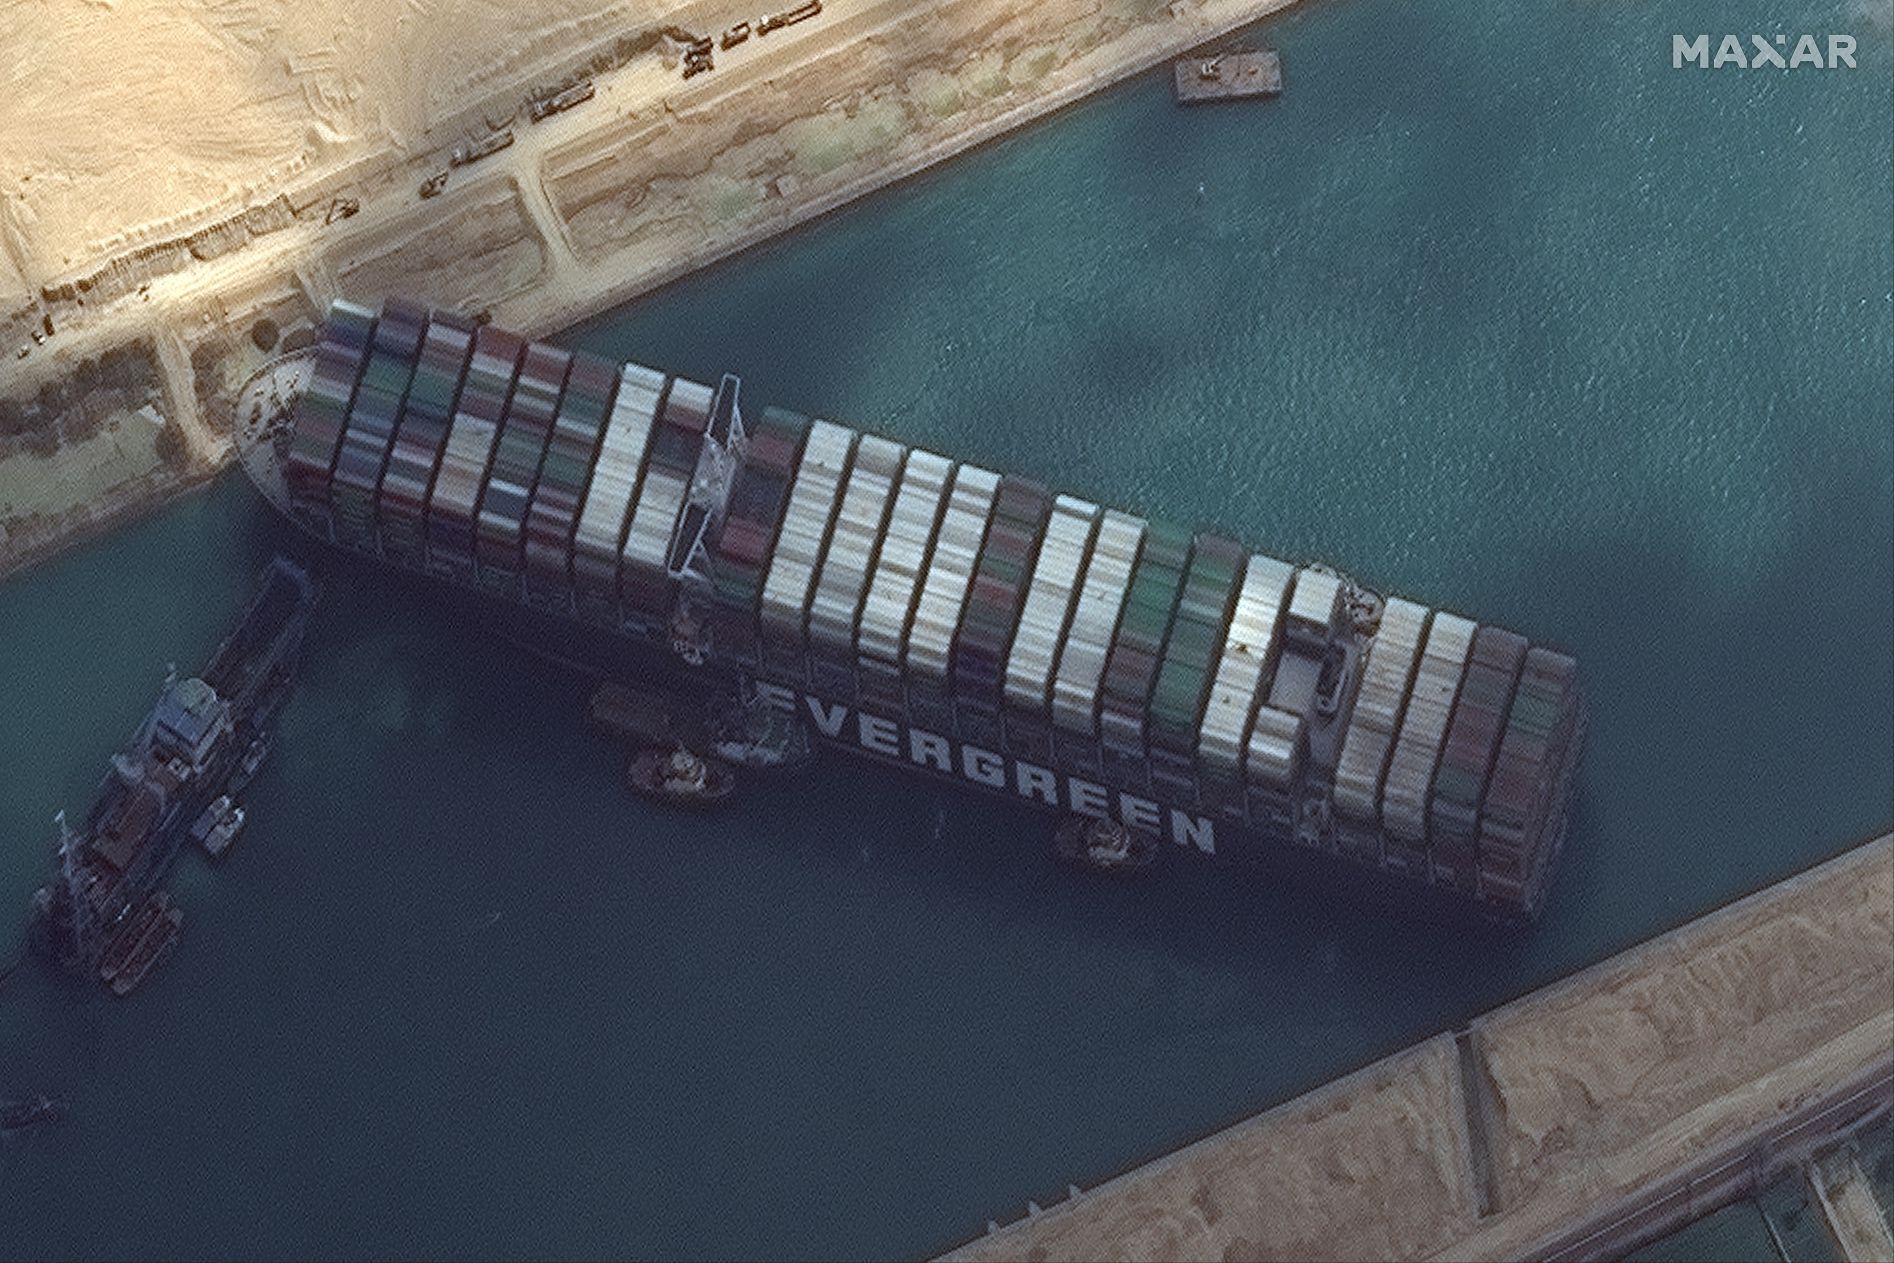 Ada Dugaan Penyebab Terusan Suez Macet karena Kesalahan Manusia, Bukan Angin